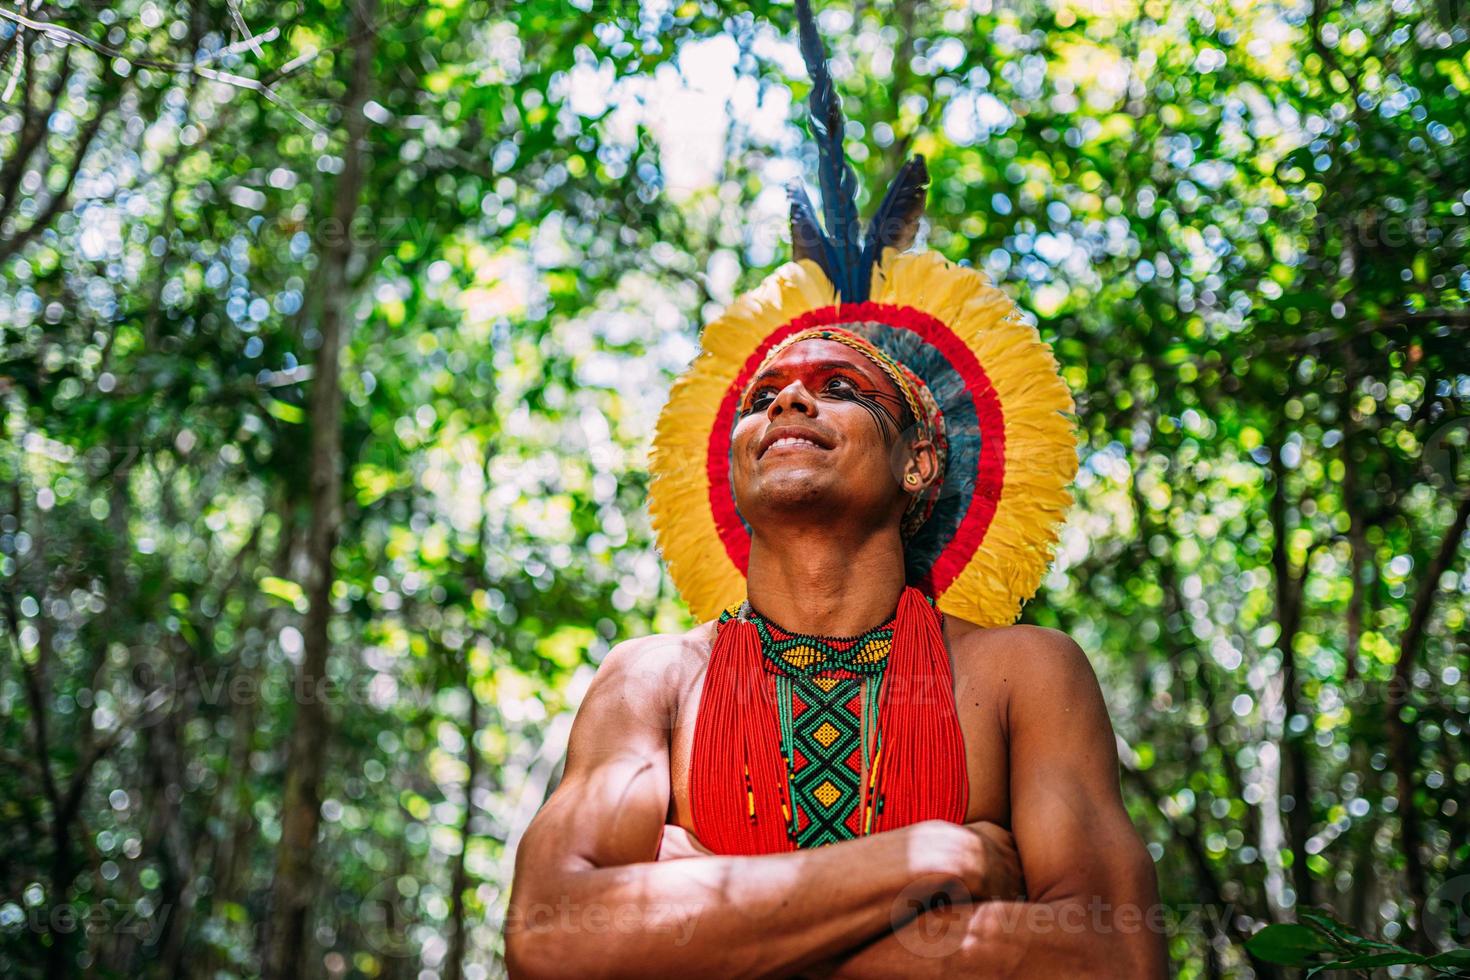 indien de la tribu pataxo, avec une coiffe de plumes. jeune indien brésilien regardant vers la gauche, souriant et les bras croisés photo